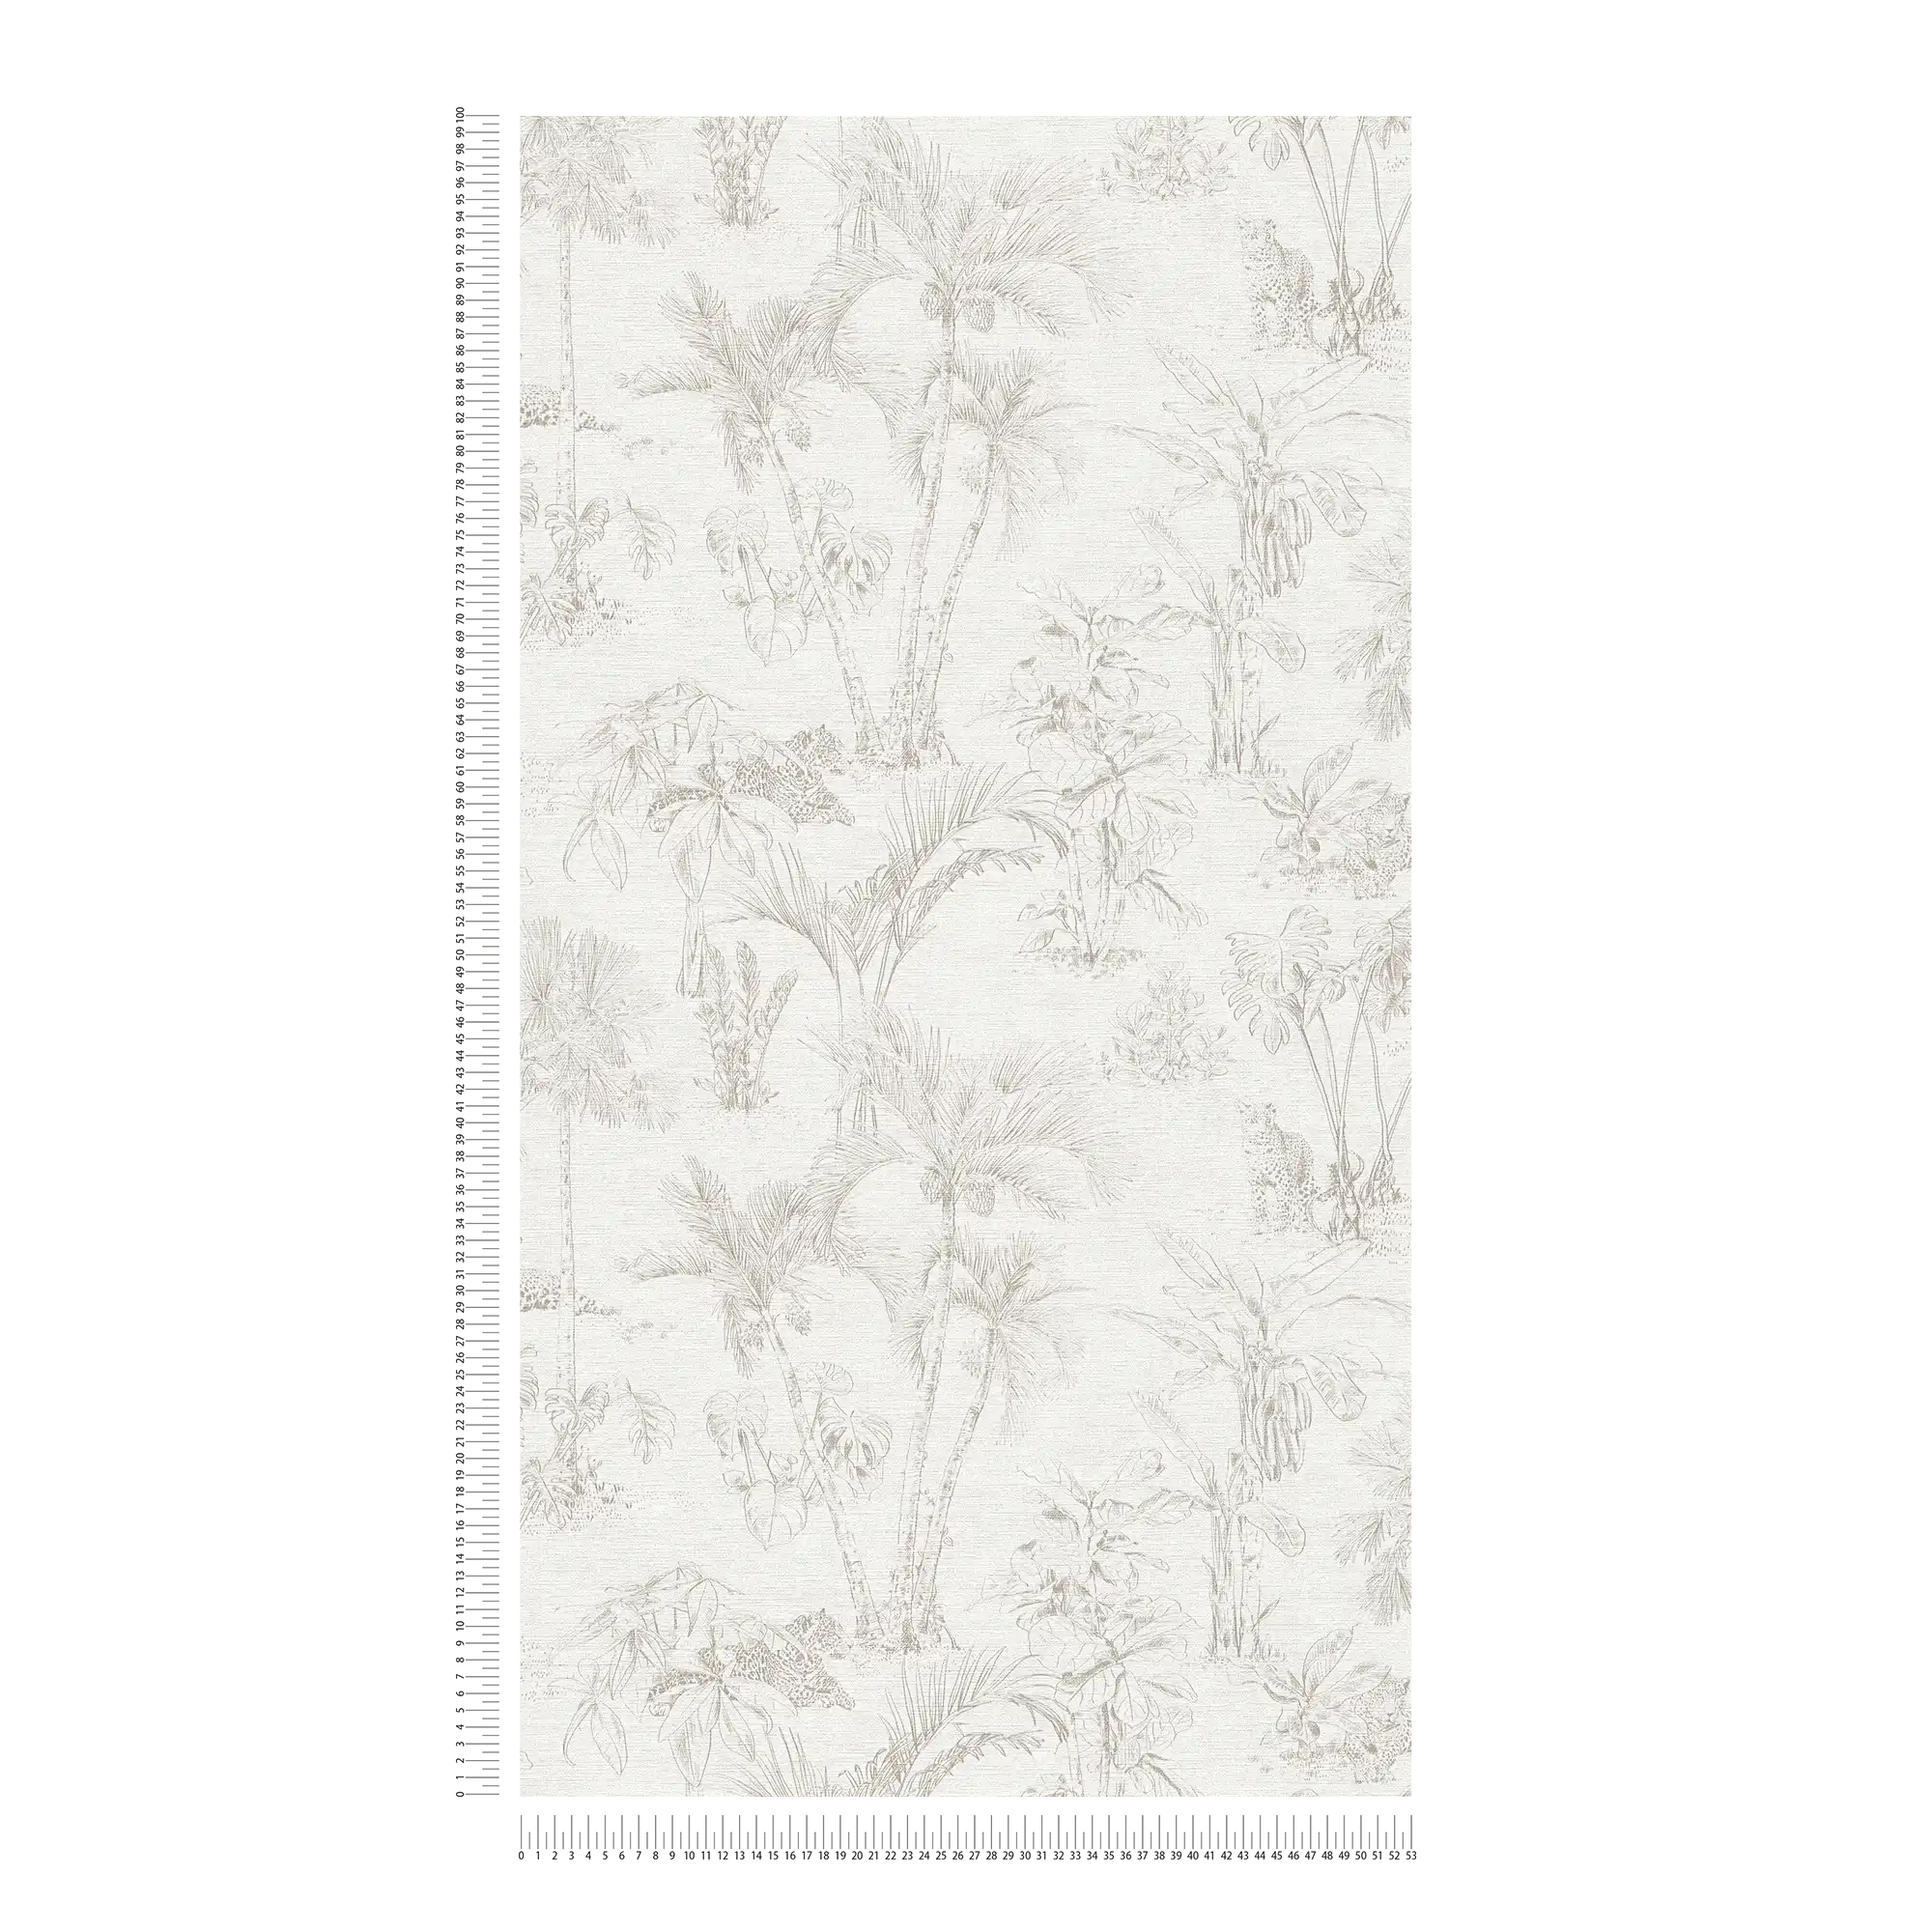             Papier peint jungle avec feuilles de palmier et motif animalier - beige, gris
        